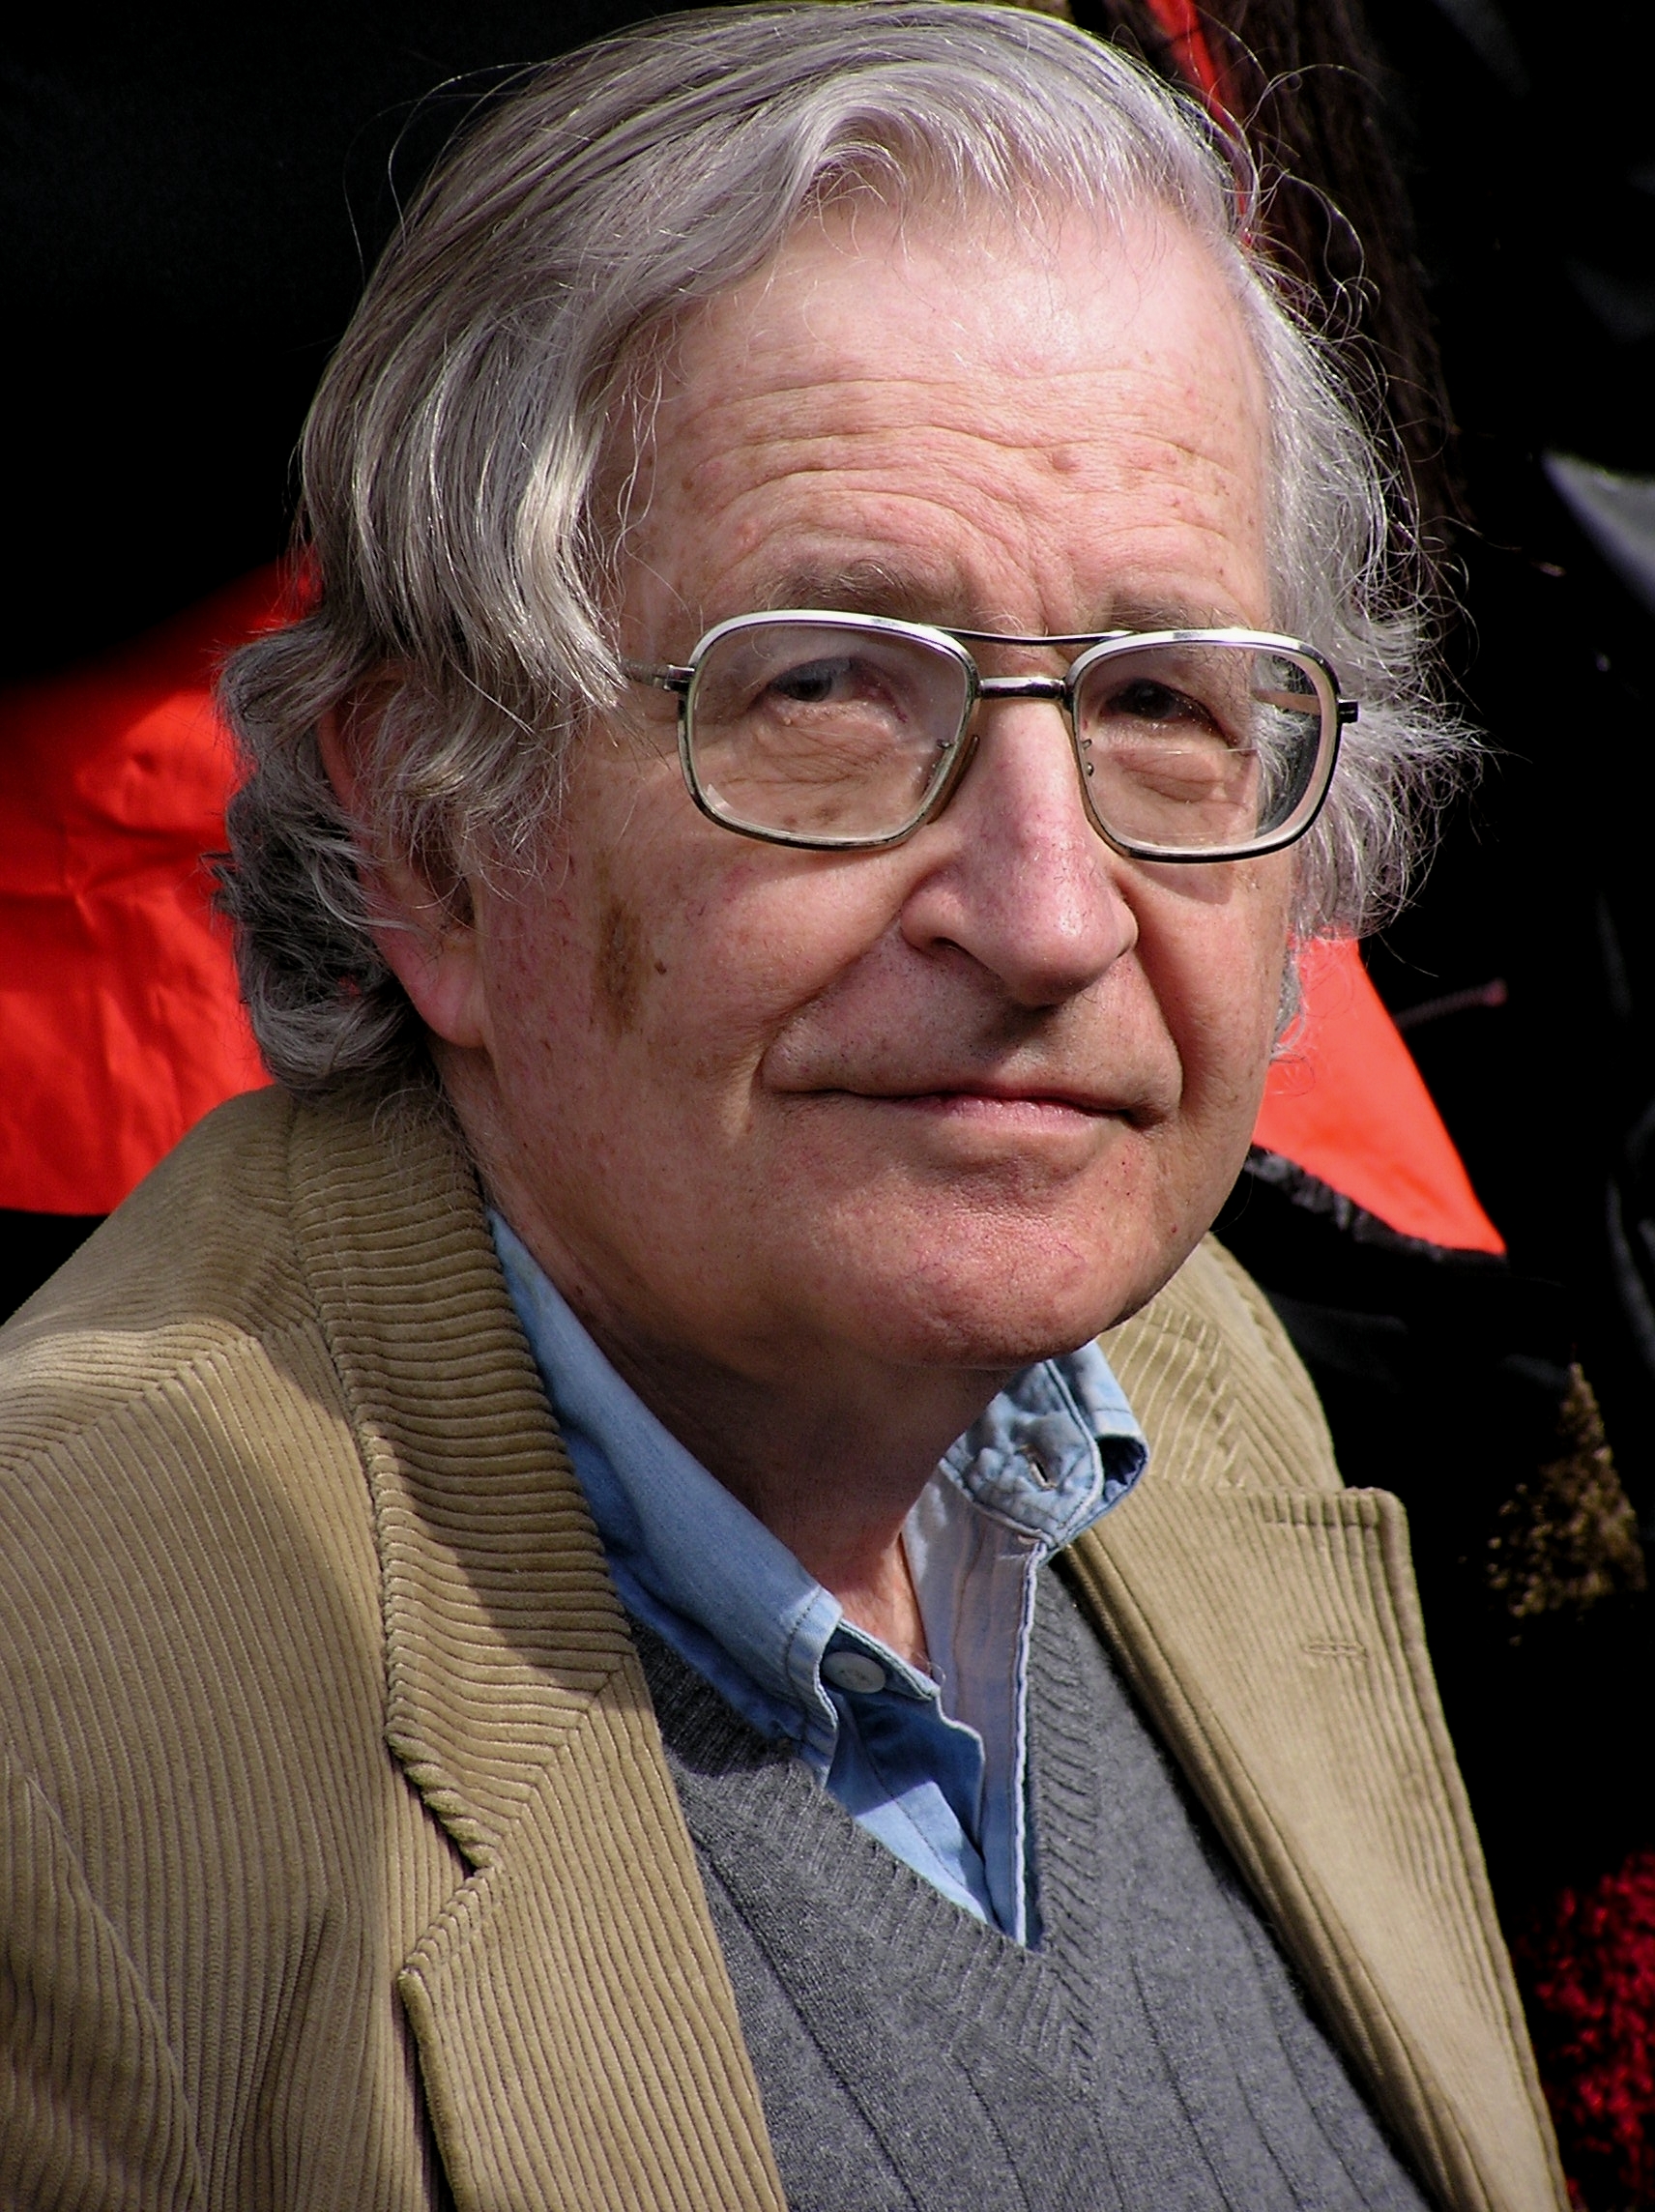 Vilka är Noam Chomskys politiska åsikter?